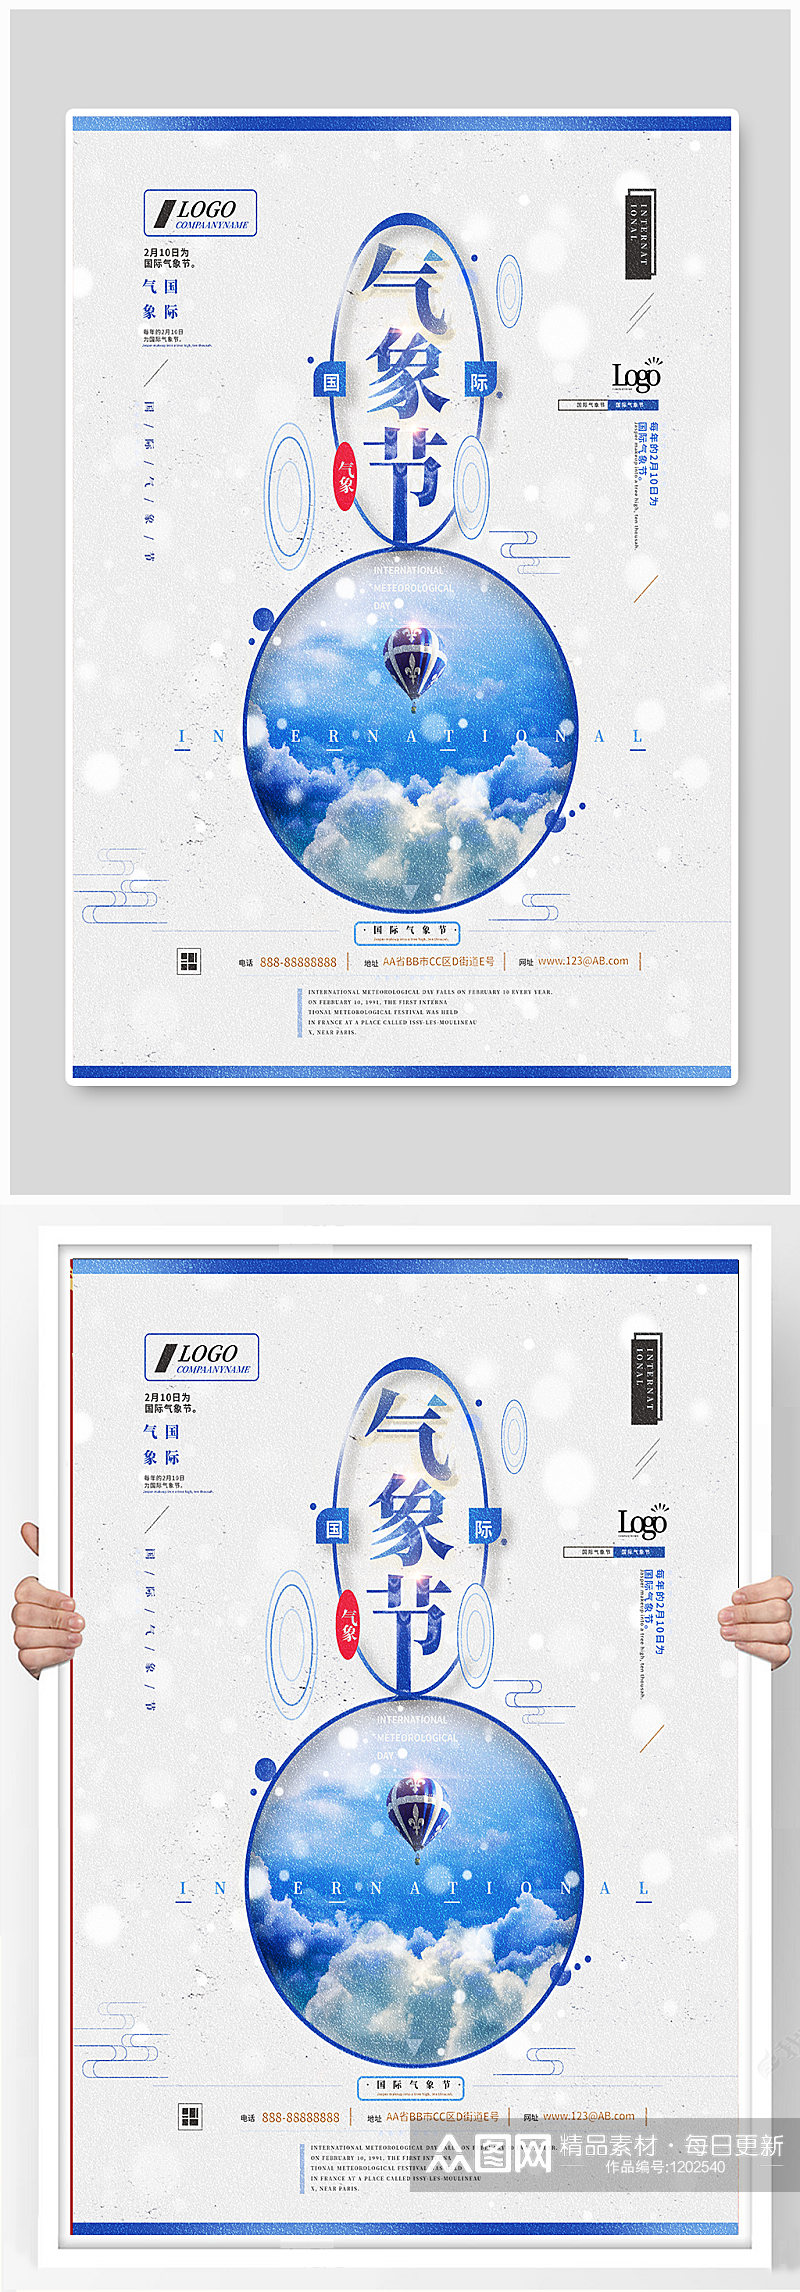 蓝色国际气象节创意合成海报 世界气象日海报素材